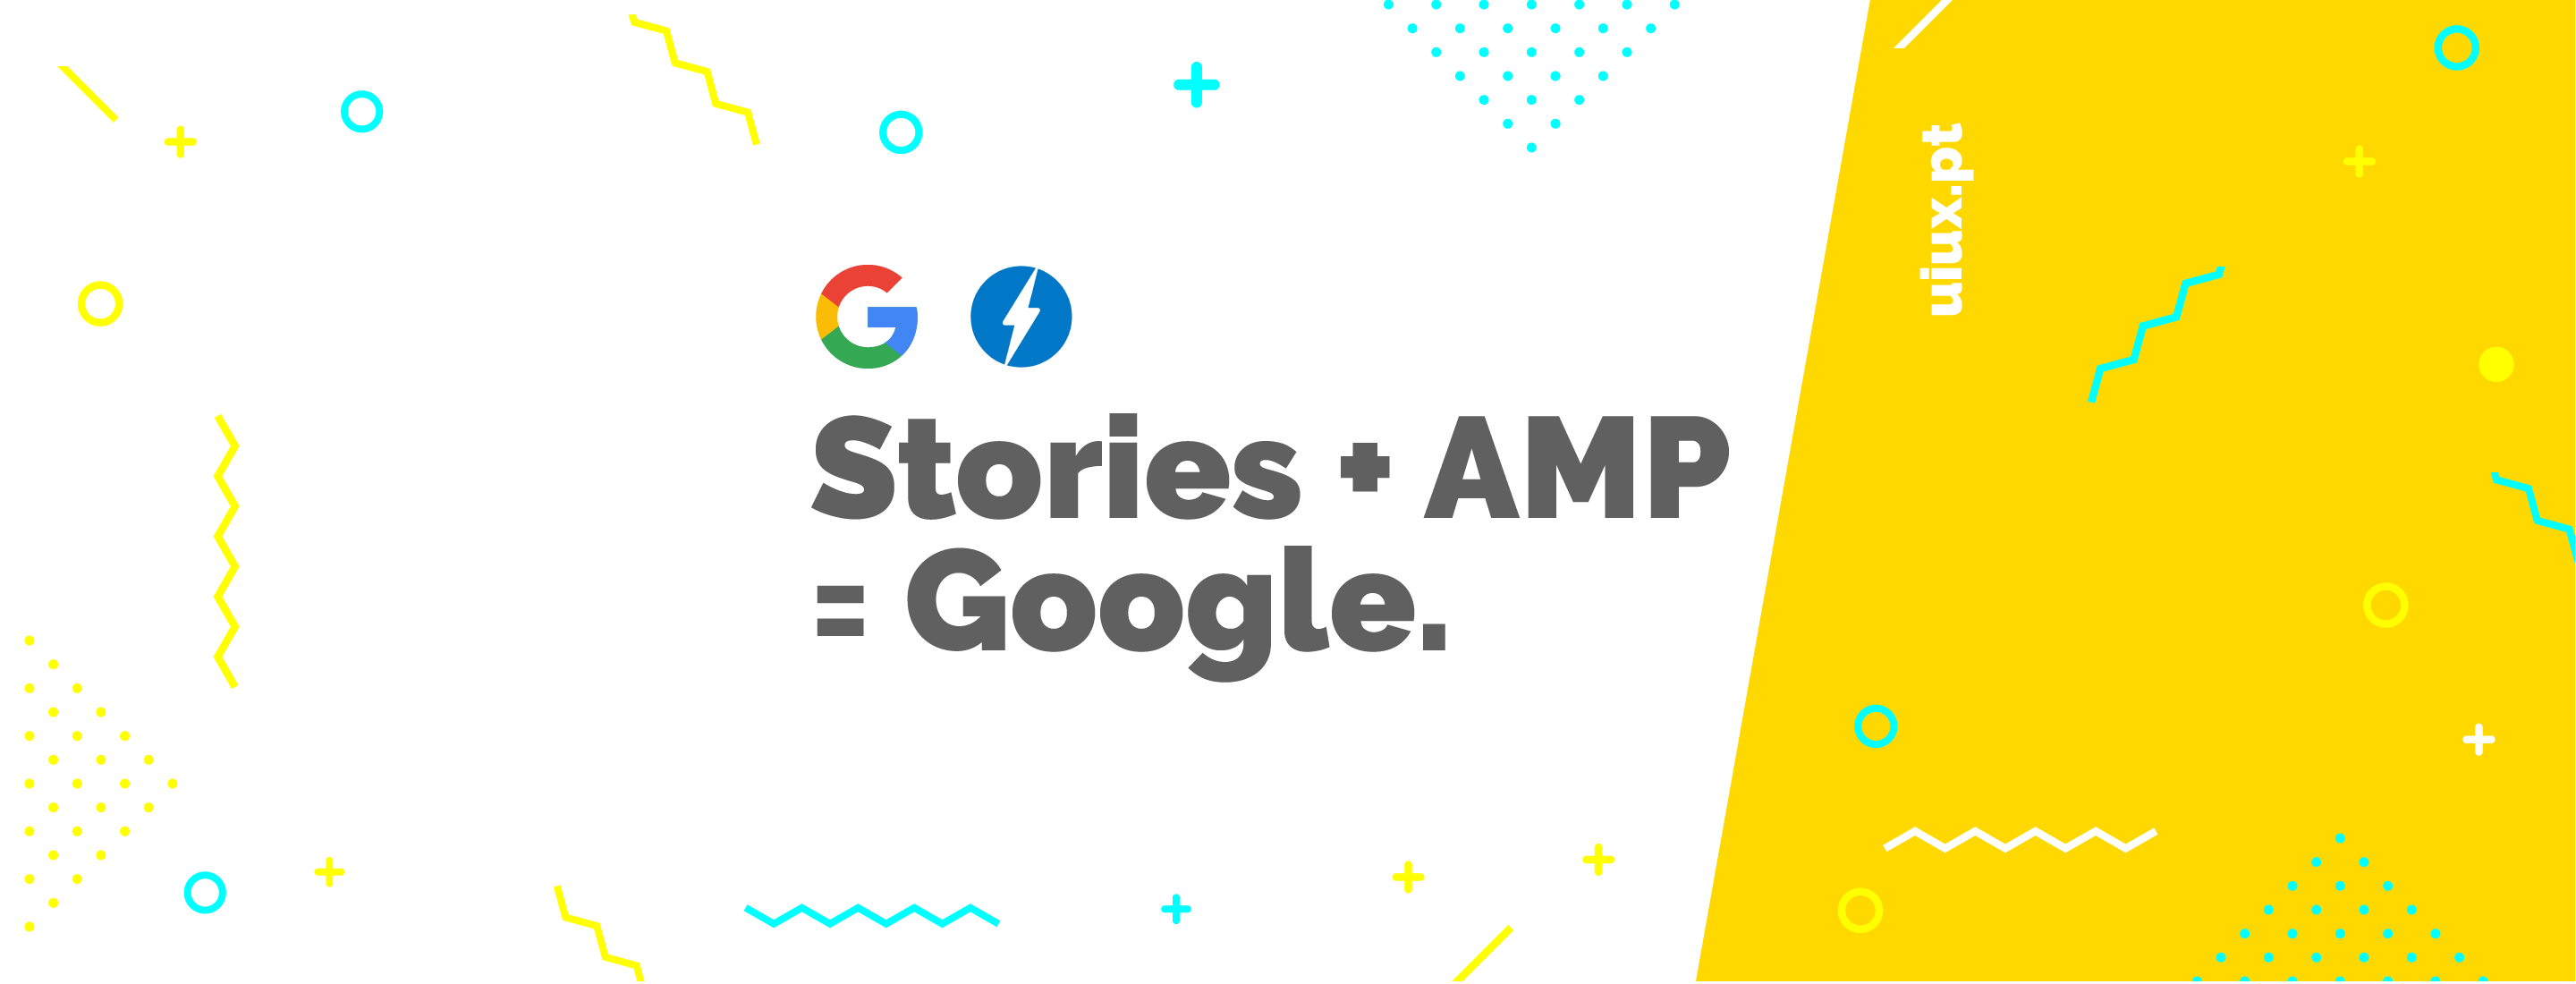 Google utilizará “Stories” para apresentar notícias ao utilizador.